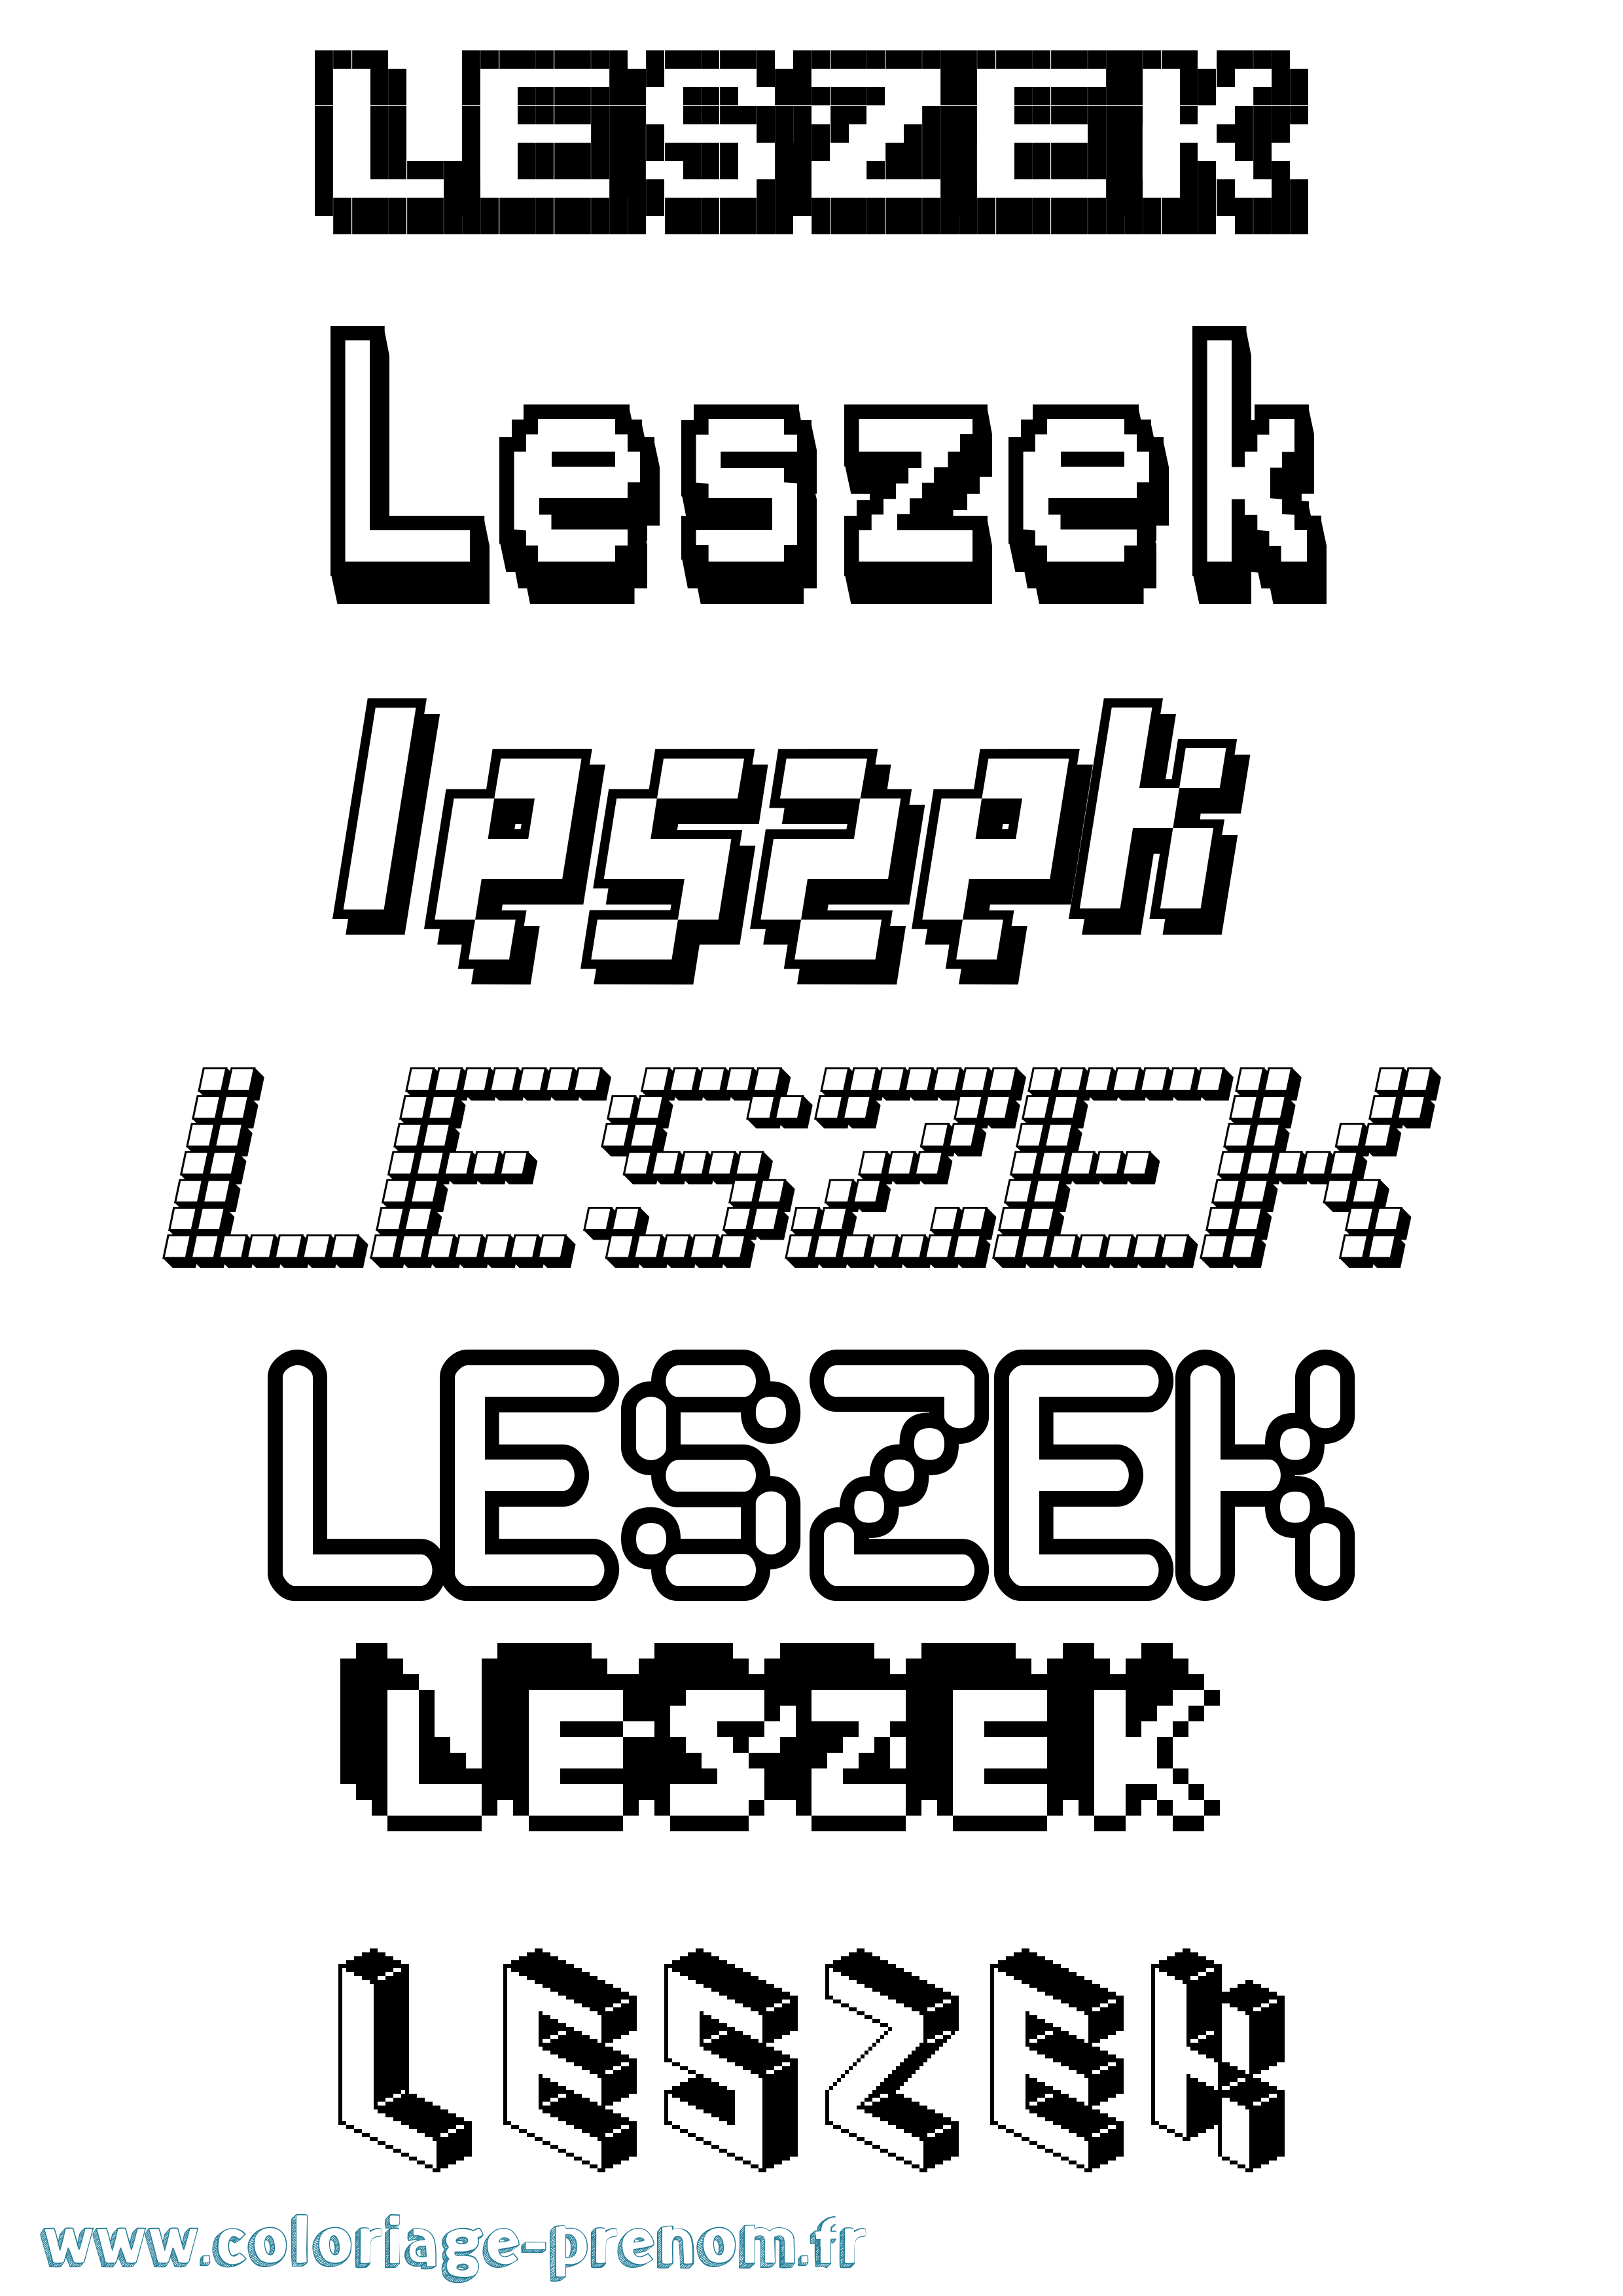 Coloriage prénom Leszek Pixel